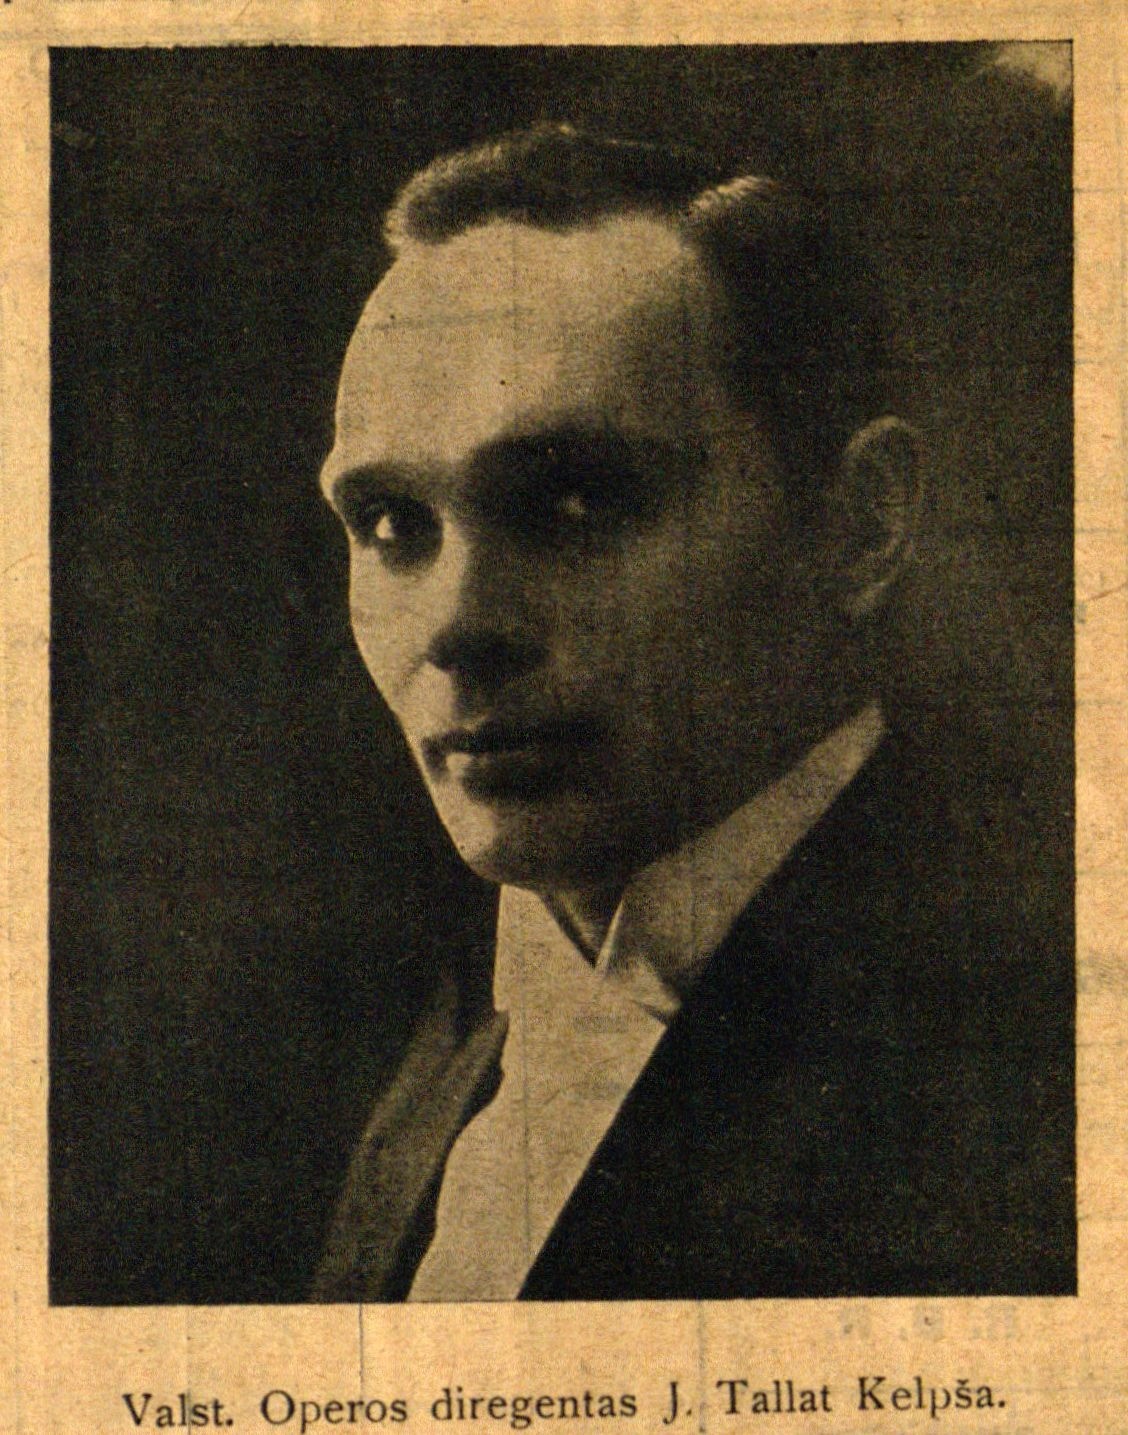 Valst. Operos dirigentas J. Tallat Kelpša // 7 meno dienos. – 1927, Nr. 2, p. 6.